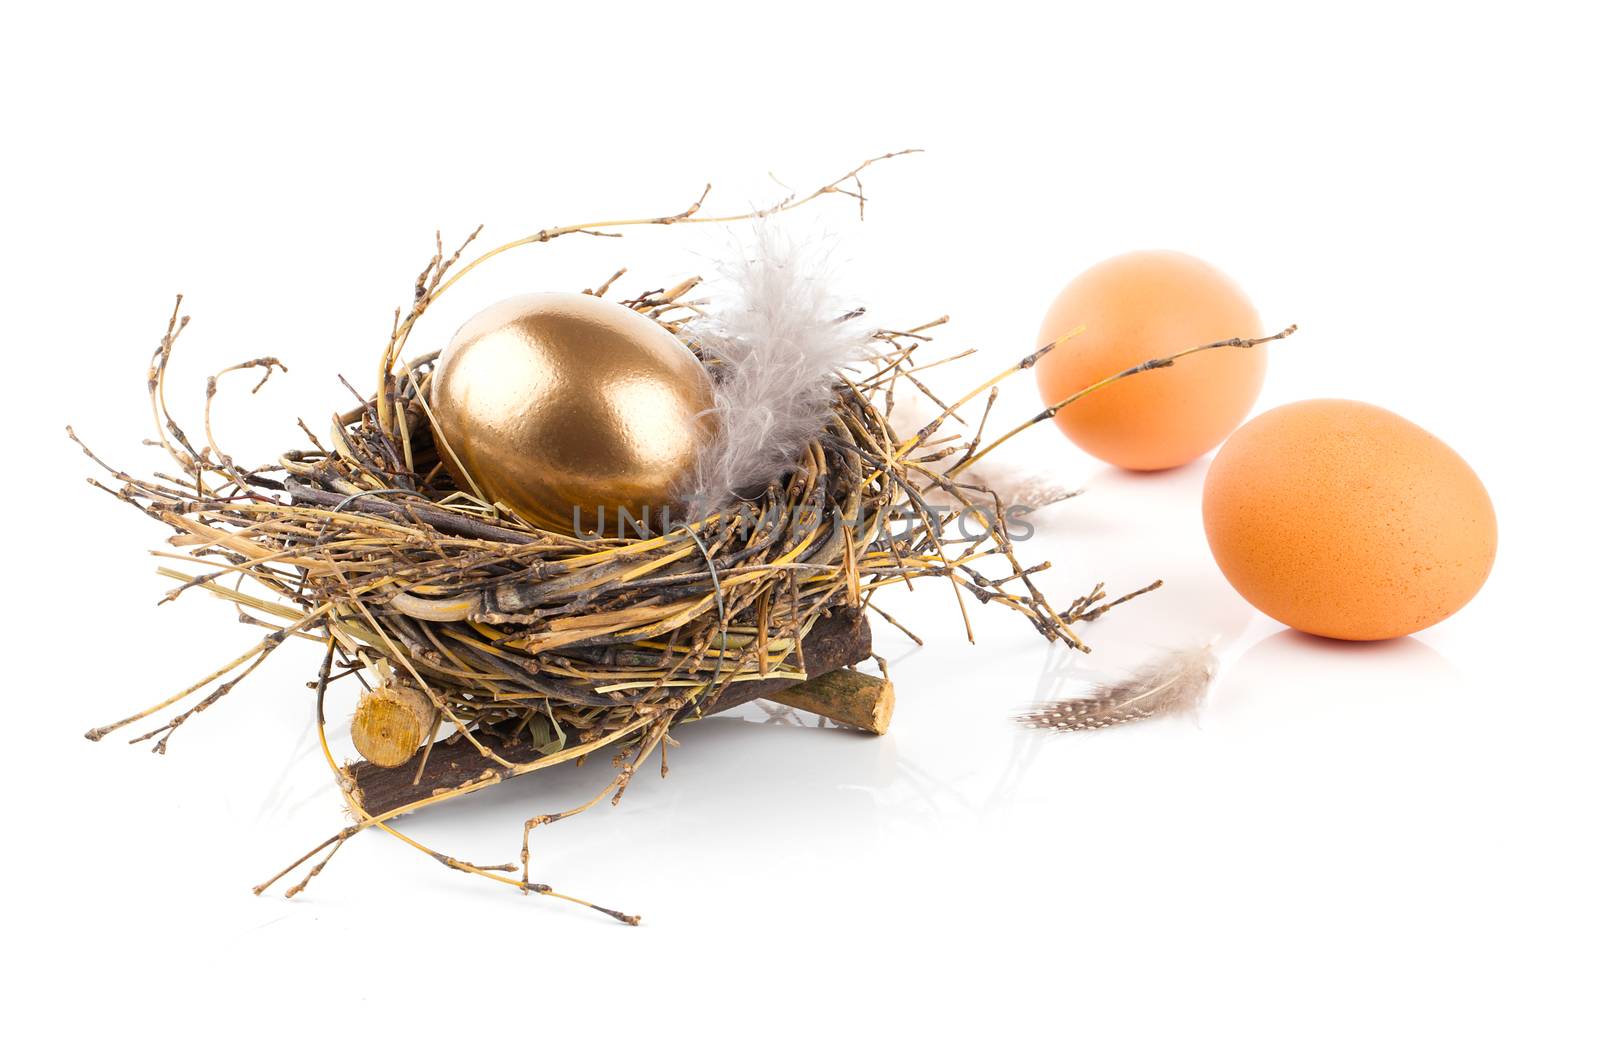 Golden egg in nest on white background by motorolka